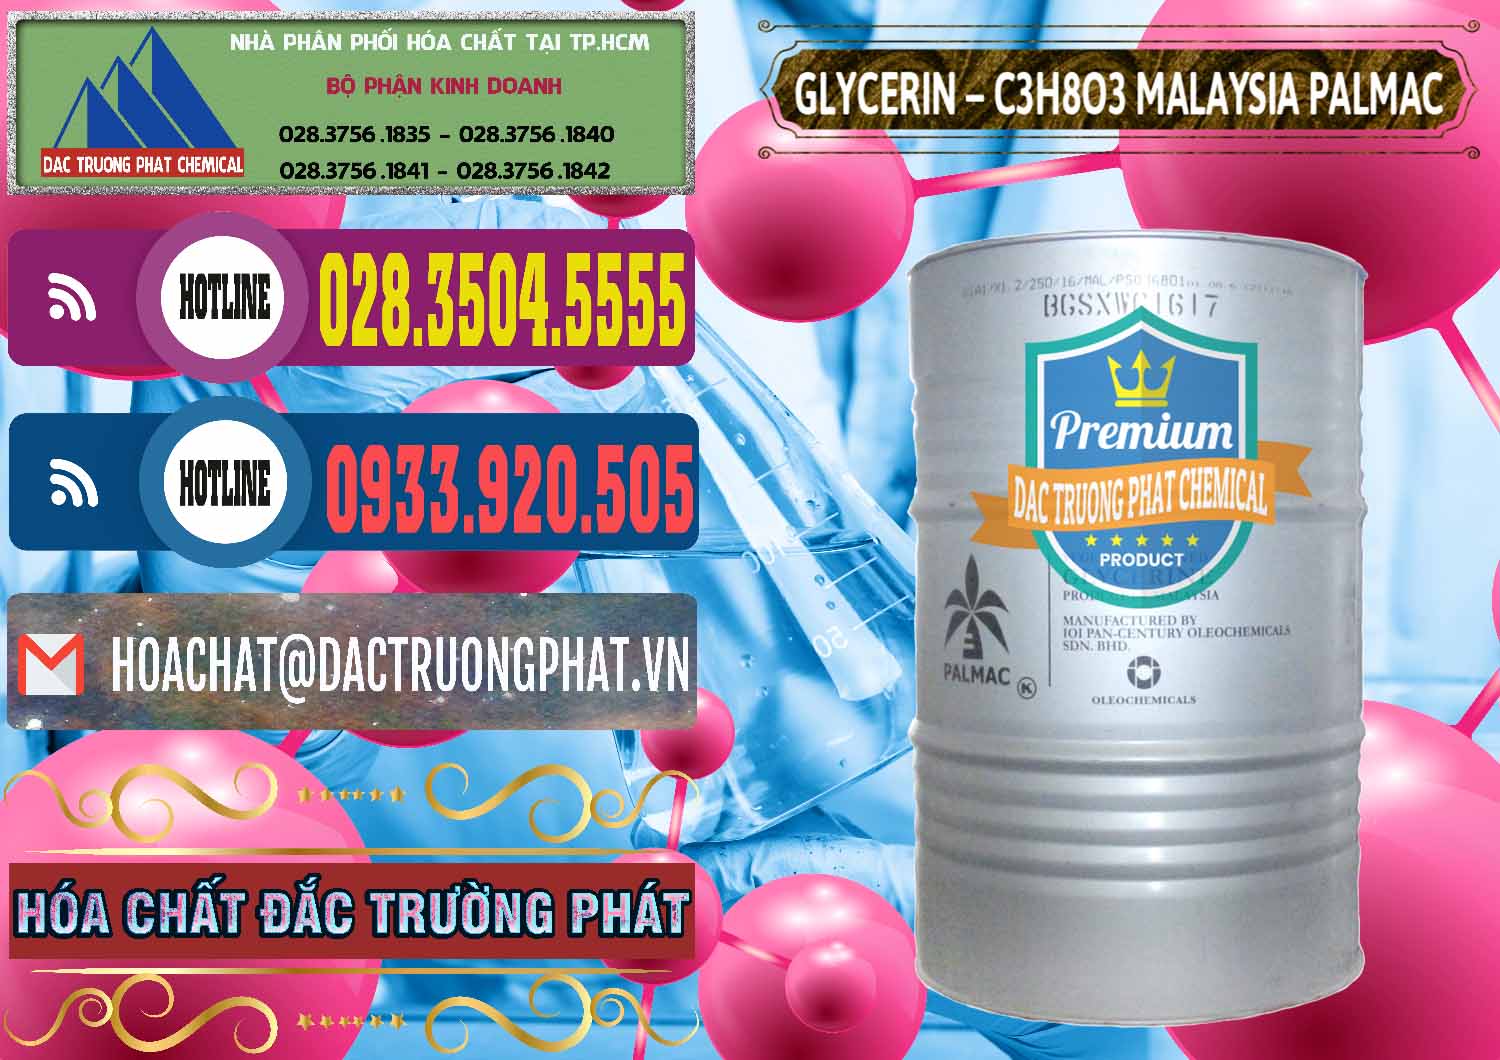 Cty chuyên cung ứng & bán Glycerin – C3H8O3 99.7% Malaysia Palmac - 0067 - Đơn vị cung cấp và phân phối hóa chất tại TP.HCM - muabanhoachat.com.vn